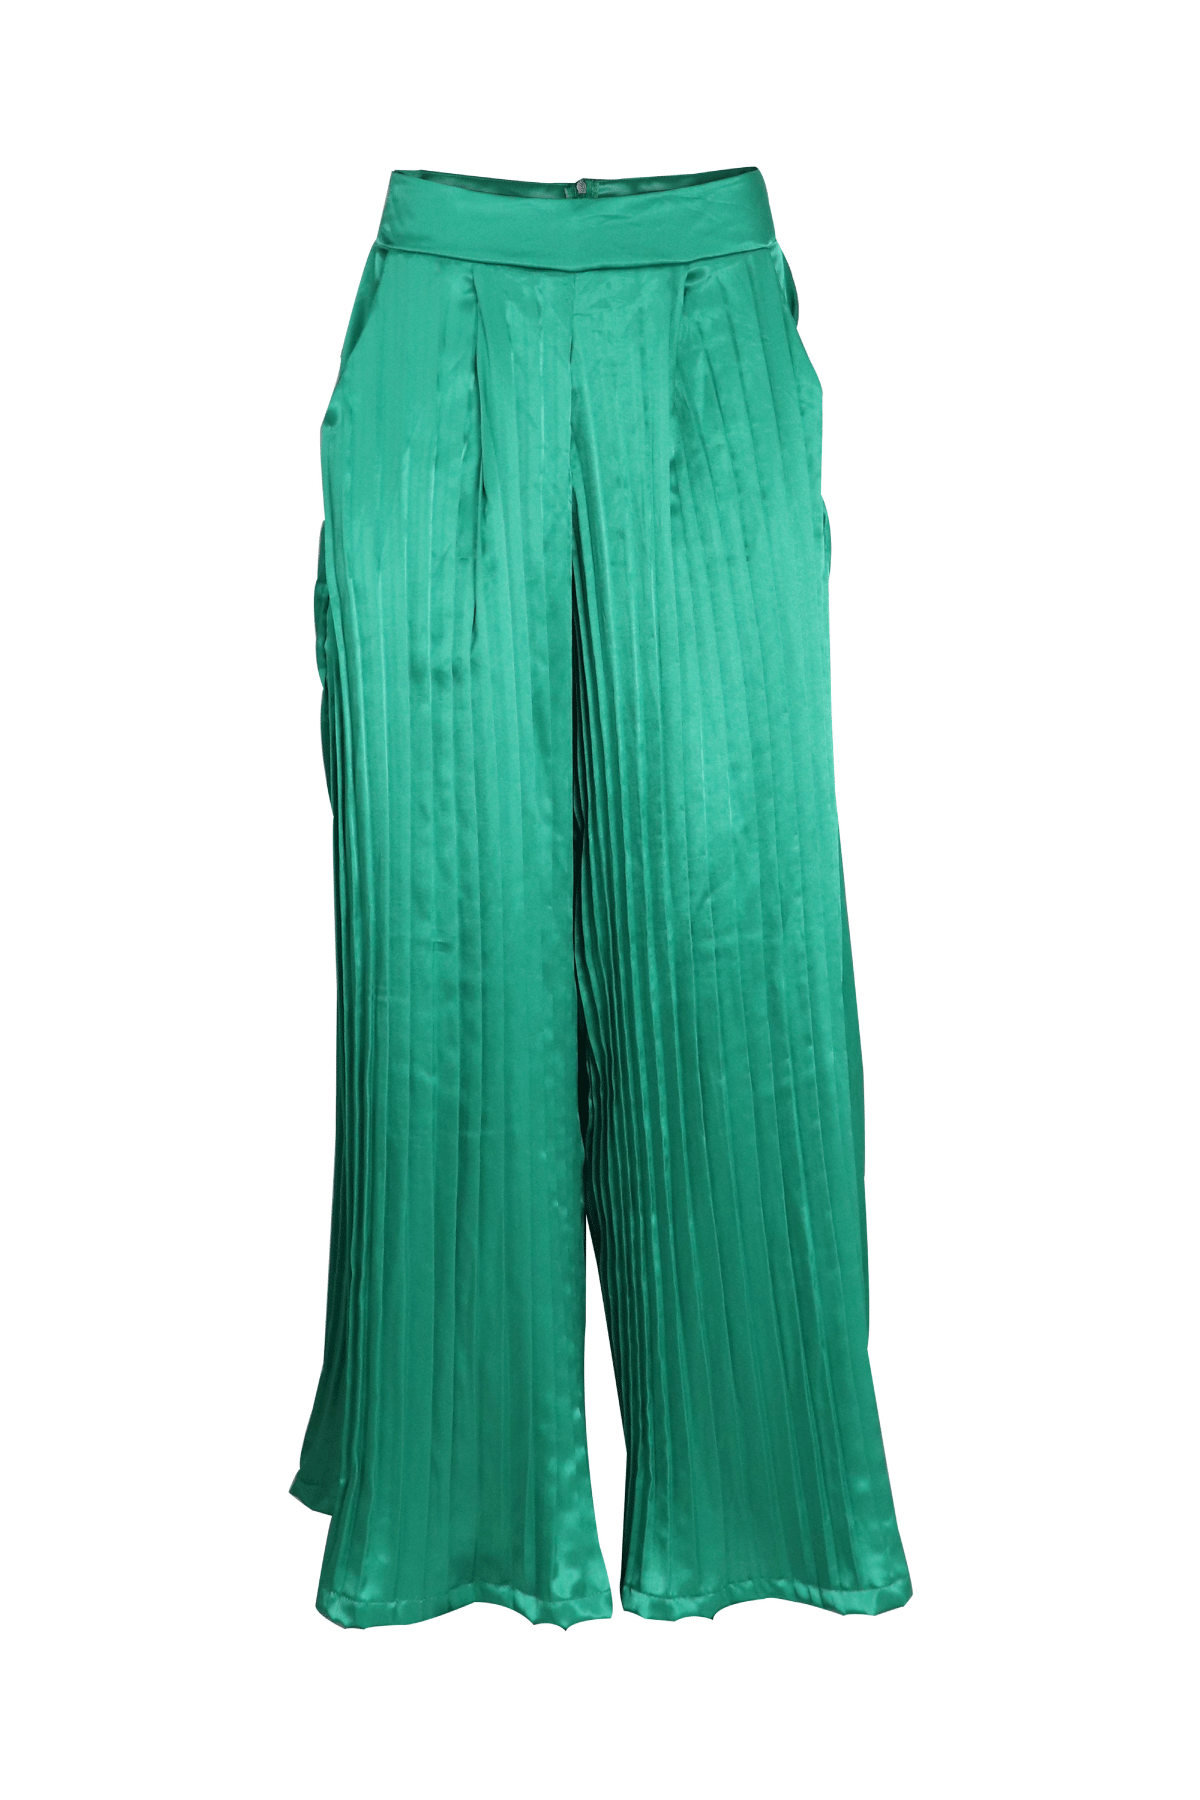 Pantalón trillado en verde con pretina ancha.